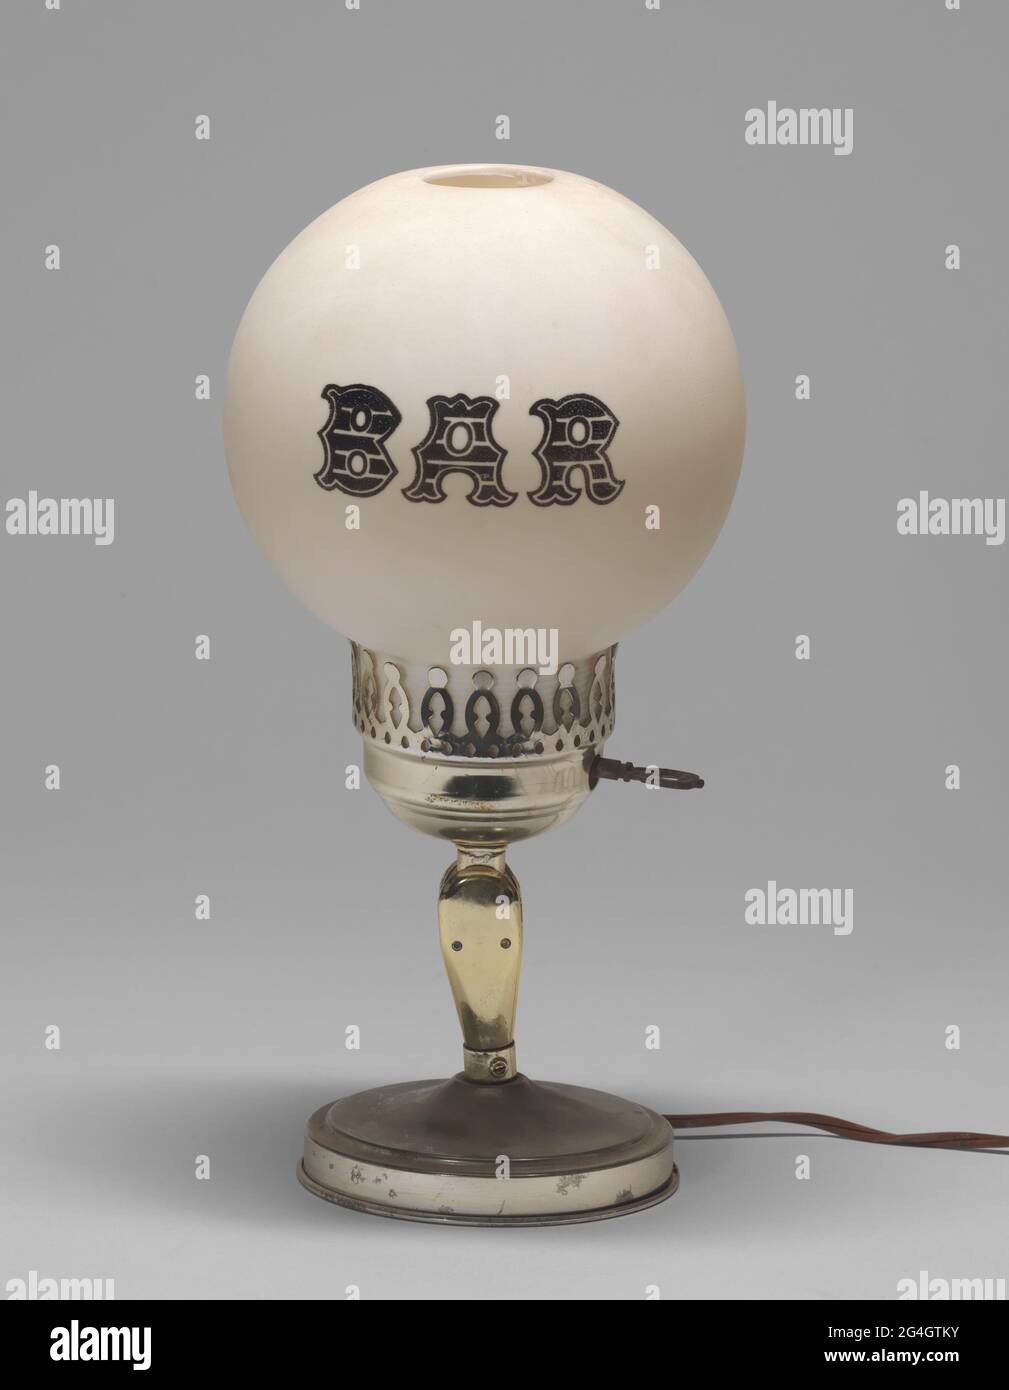 Una lampada elettrica con la parola "BAR" stampata sul paralume della  lampada. Il paralume della lampada ha una forma a sfera ed è realizzato in  plastica trattata per apparire come vetro smerigliato.